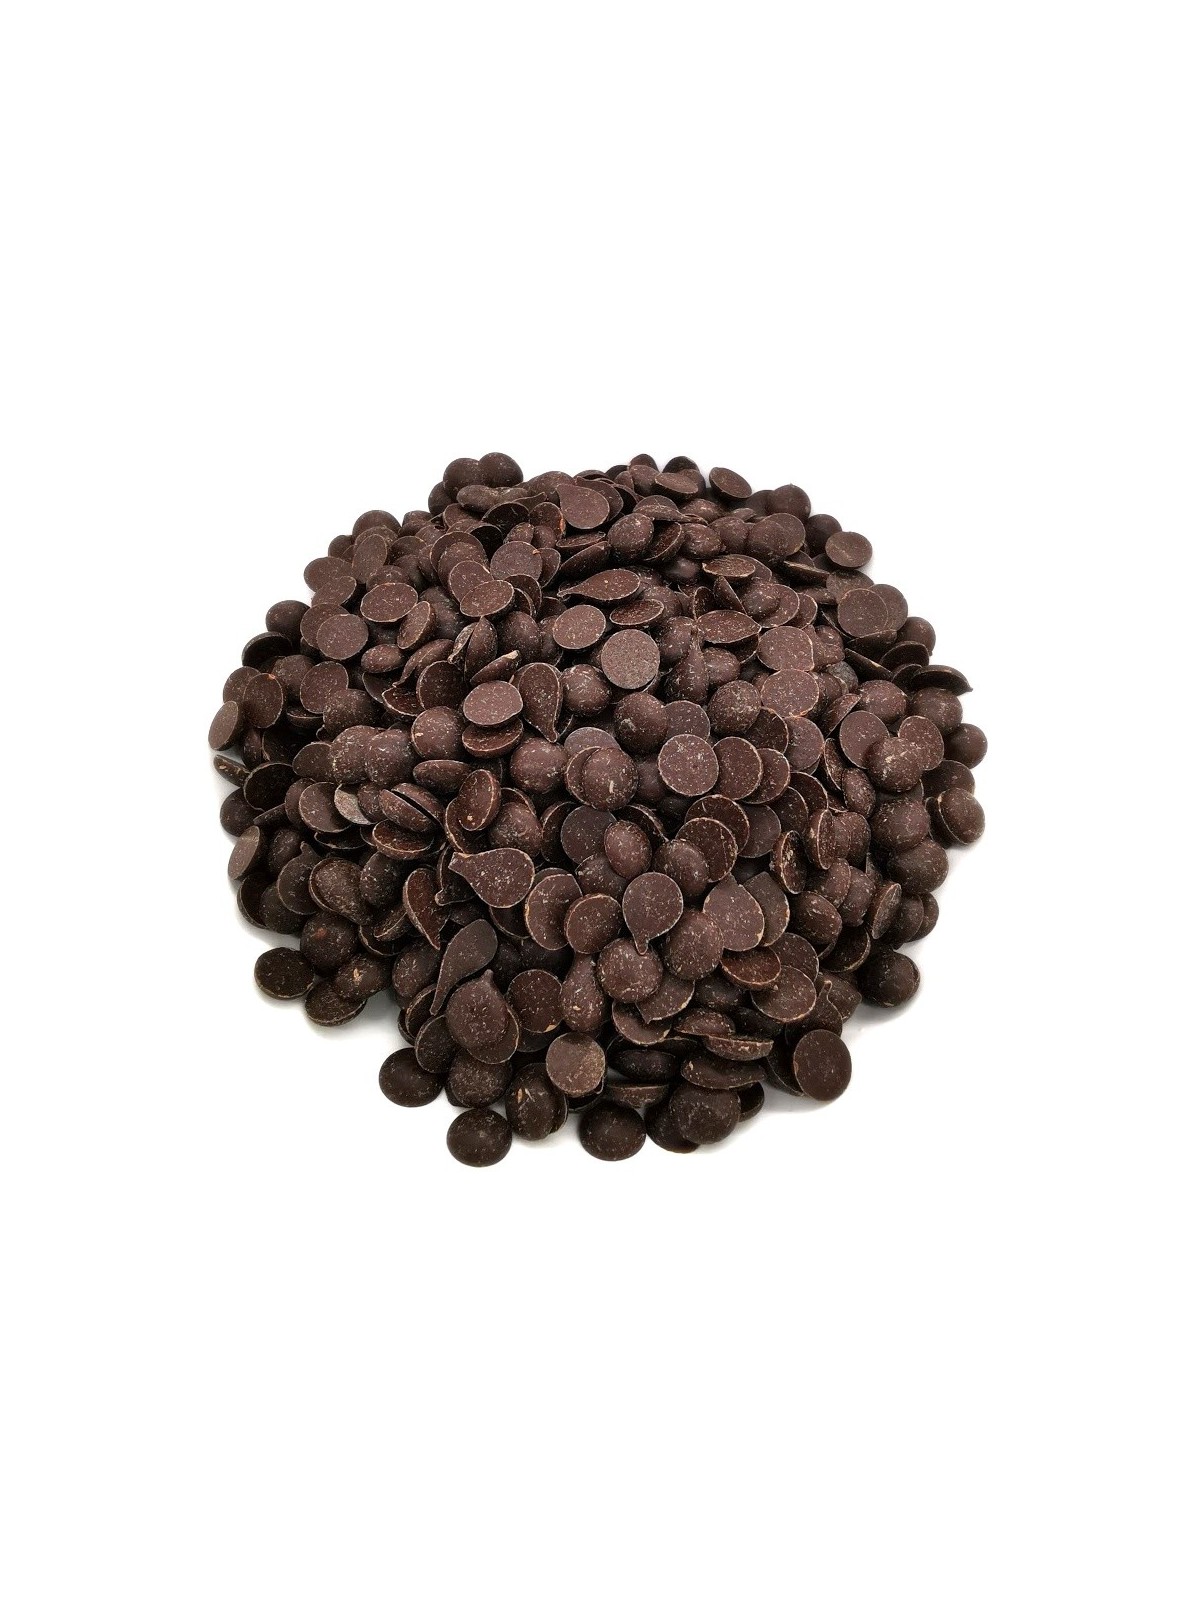 Horká čokoláda 51% pecky - dark discs - 500g